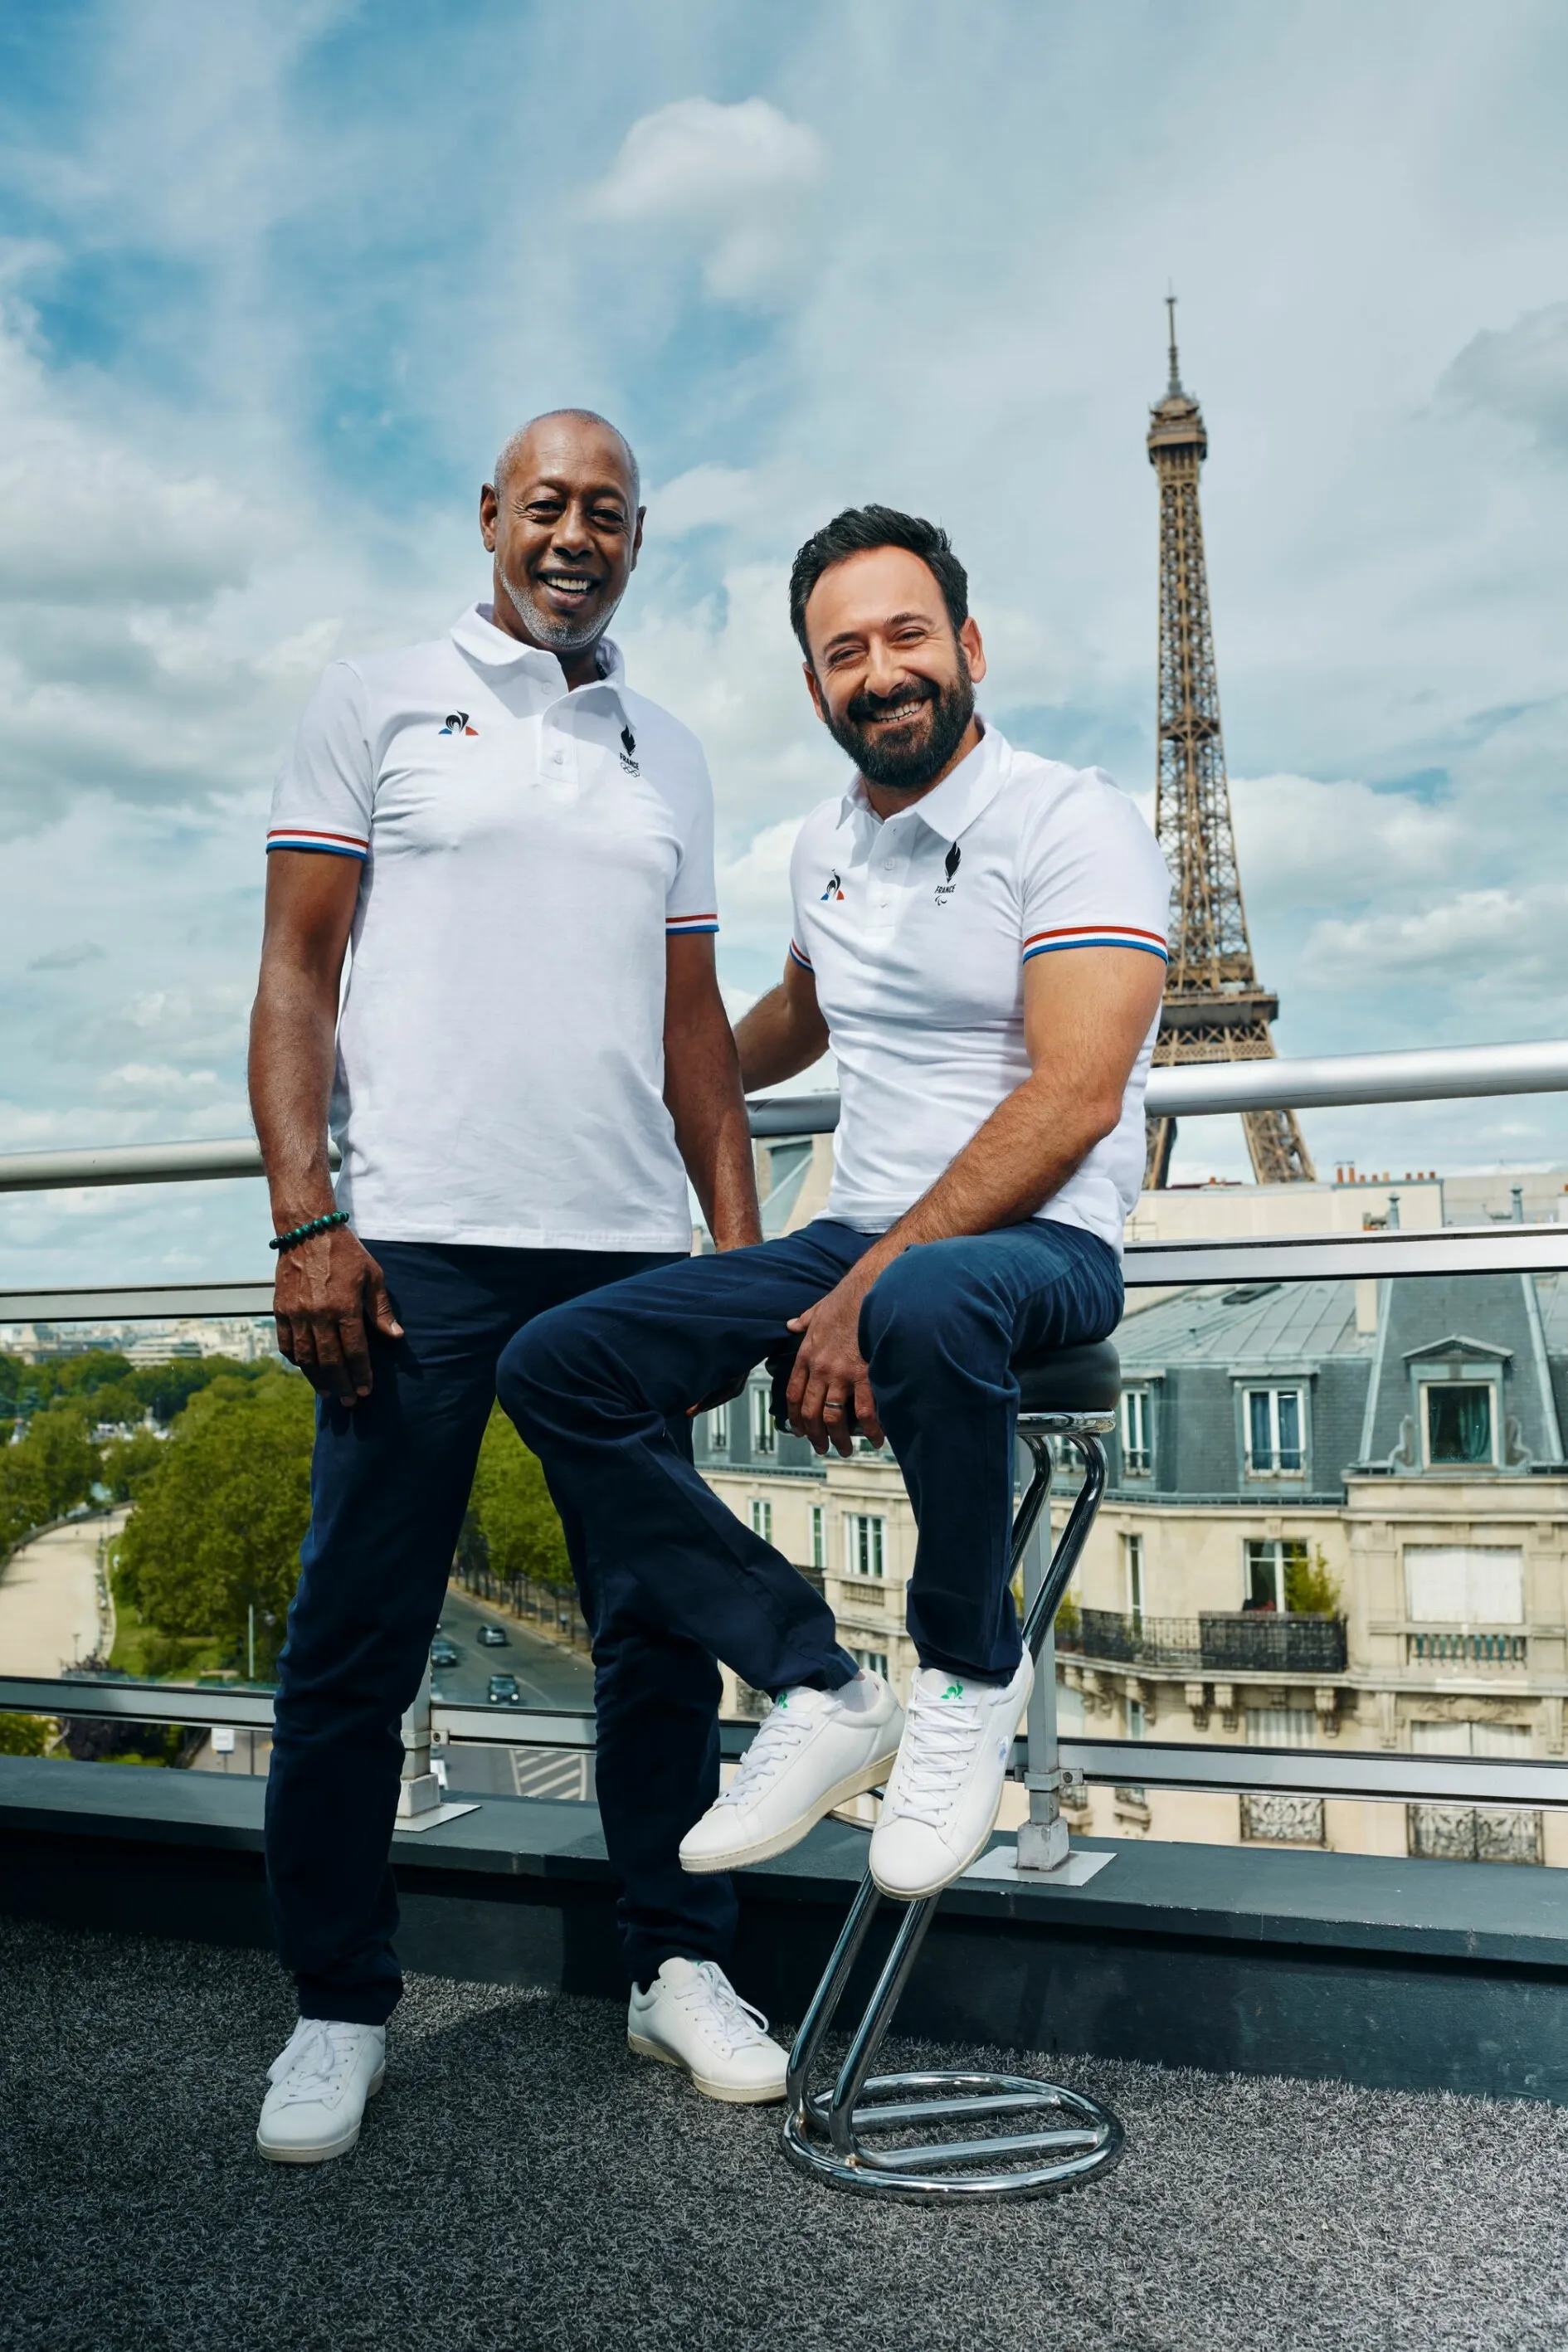 Une maison des fiertés pendant les Jeux de Paris 2024 - L'Équipe